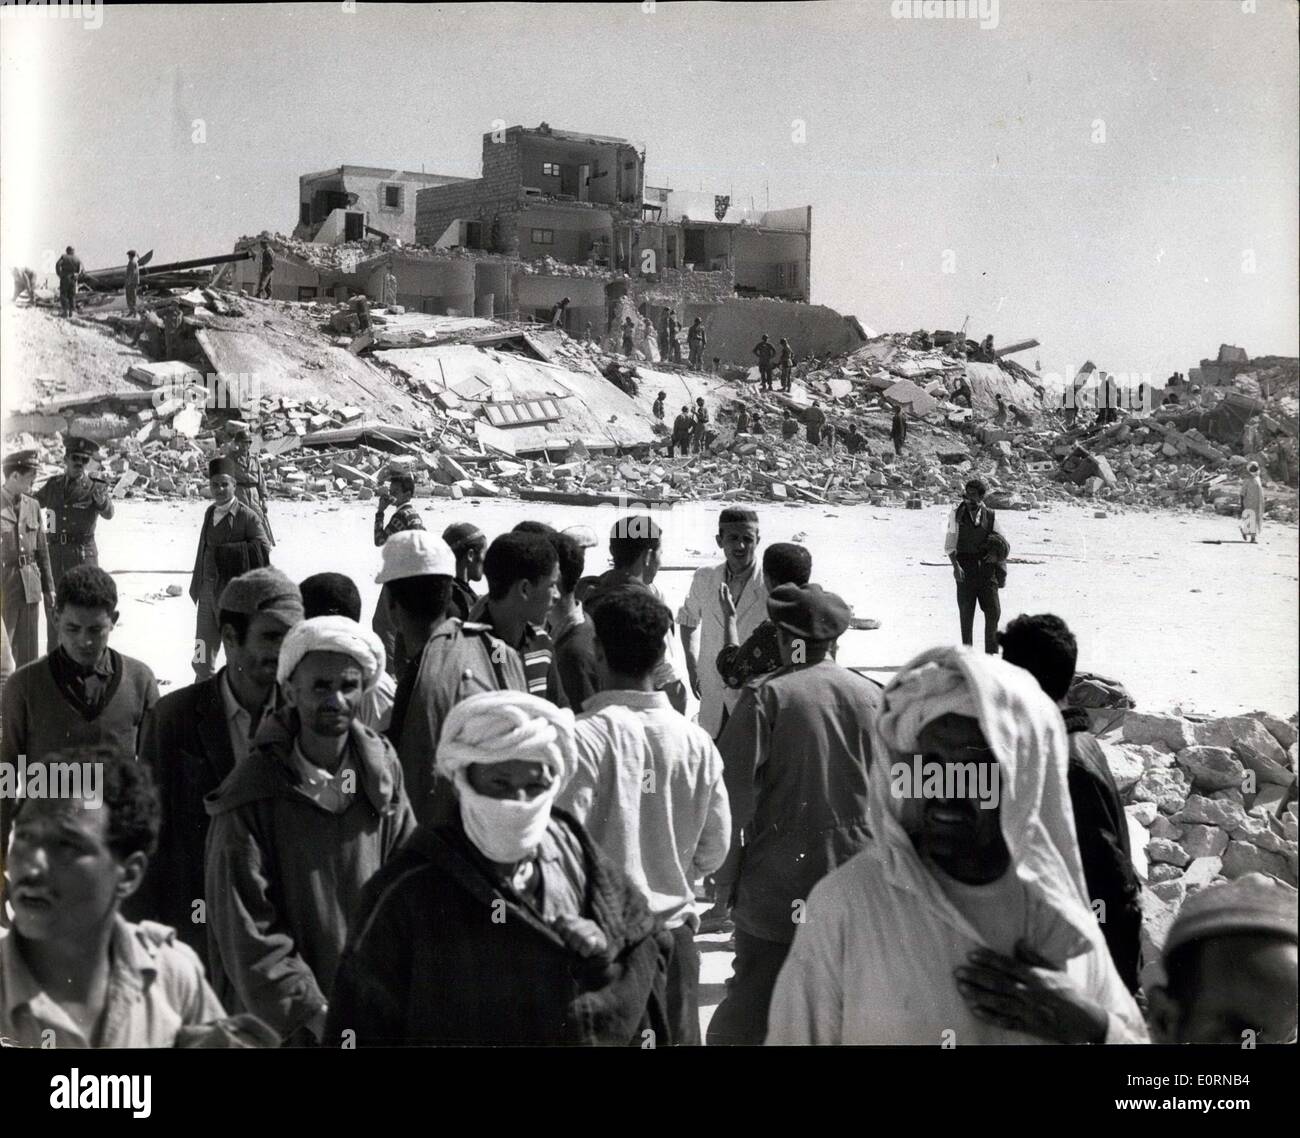 Mar. 04, 1960 - Après le tremblement de terre à Agadir. Maisons détruites après la catastrophe. : photo montre l'enveloppe d'un bâtiment en arrière-plan - comme vous pouvez chercher d'autres victimes se poursuit après le tremblement de terre à Agadir, au Maroc. Banque D'Images